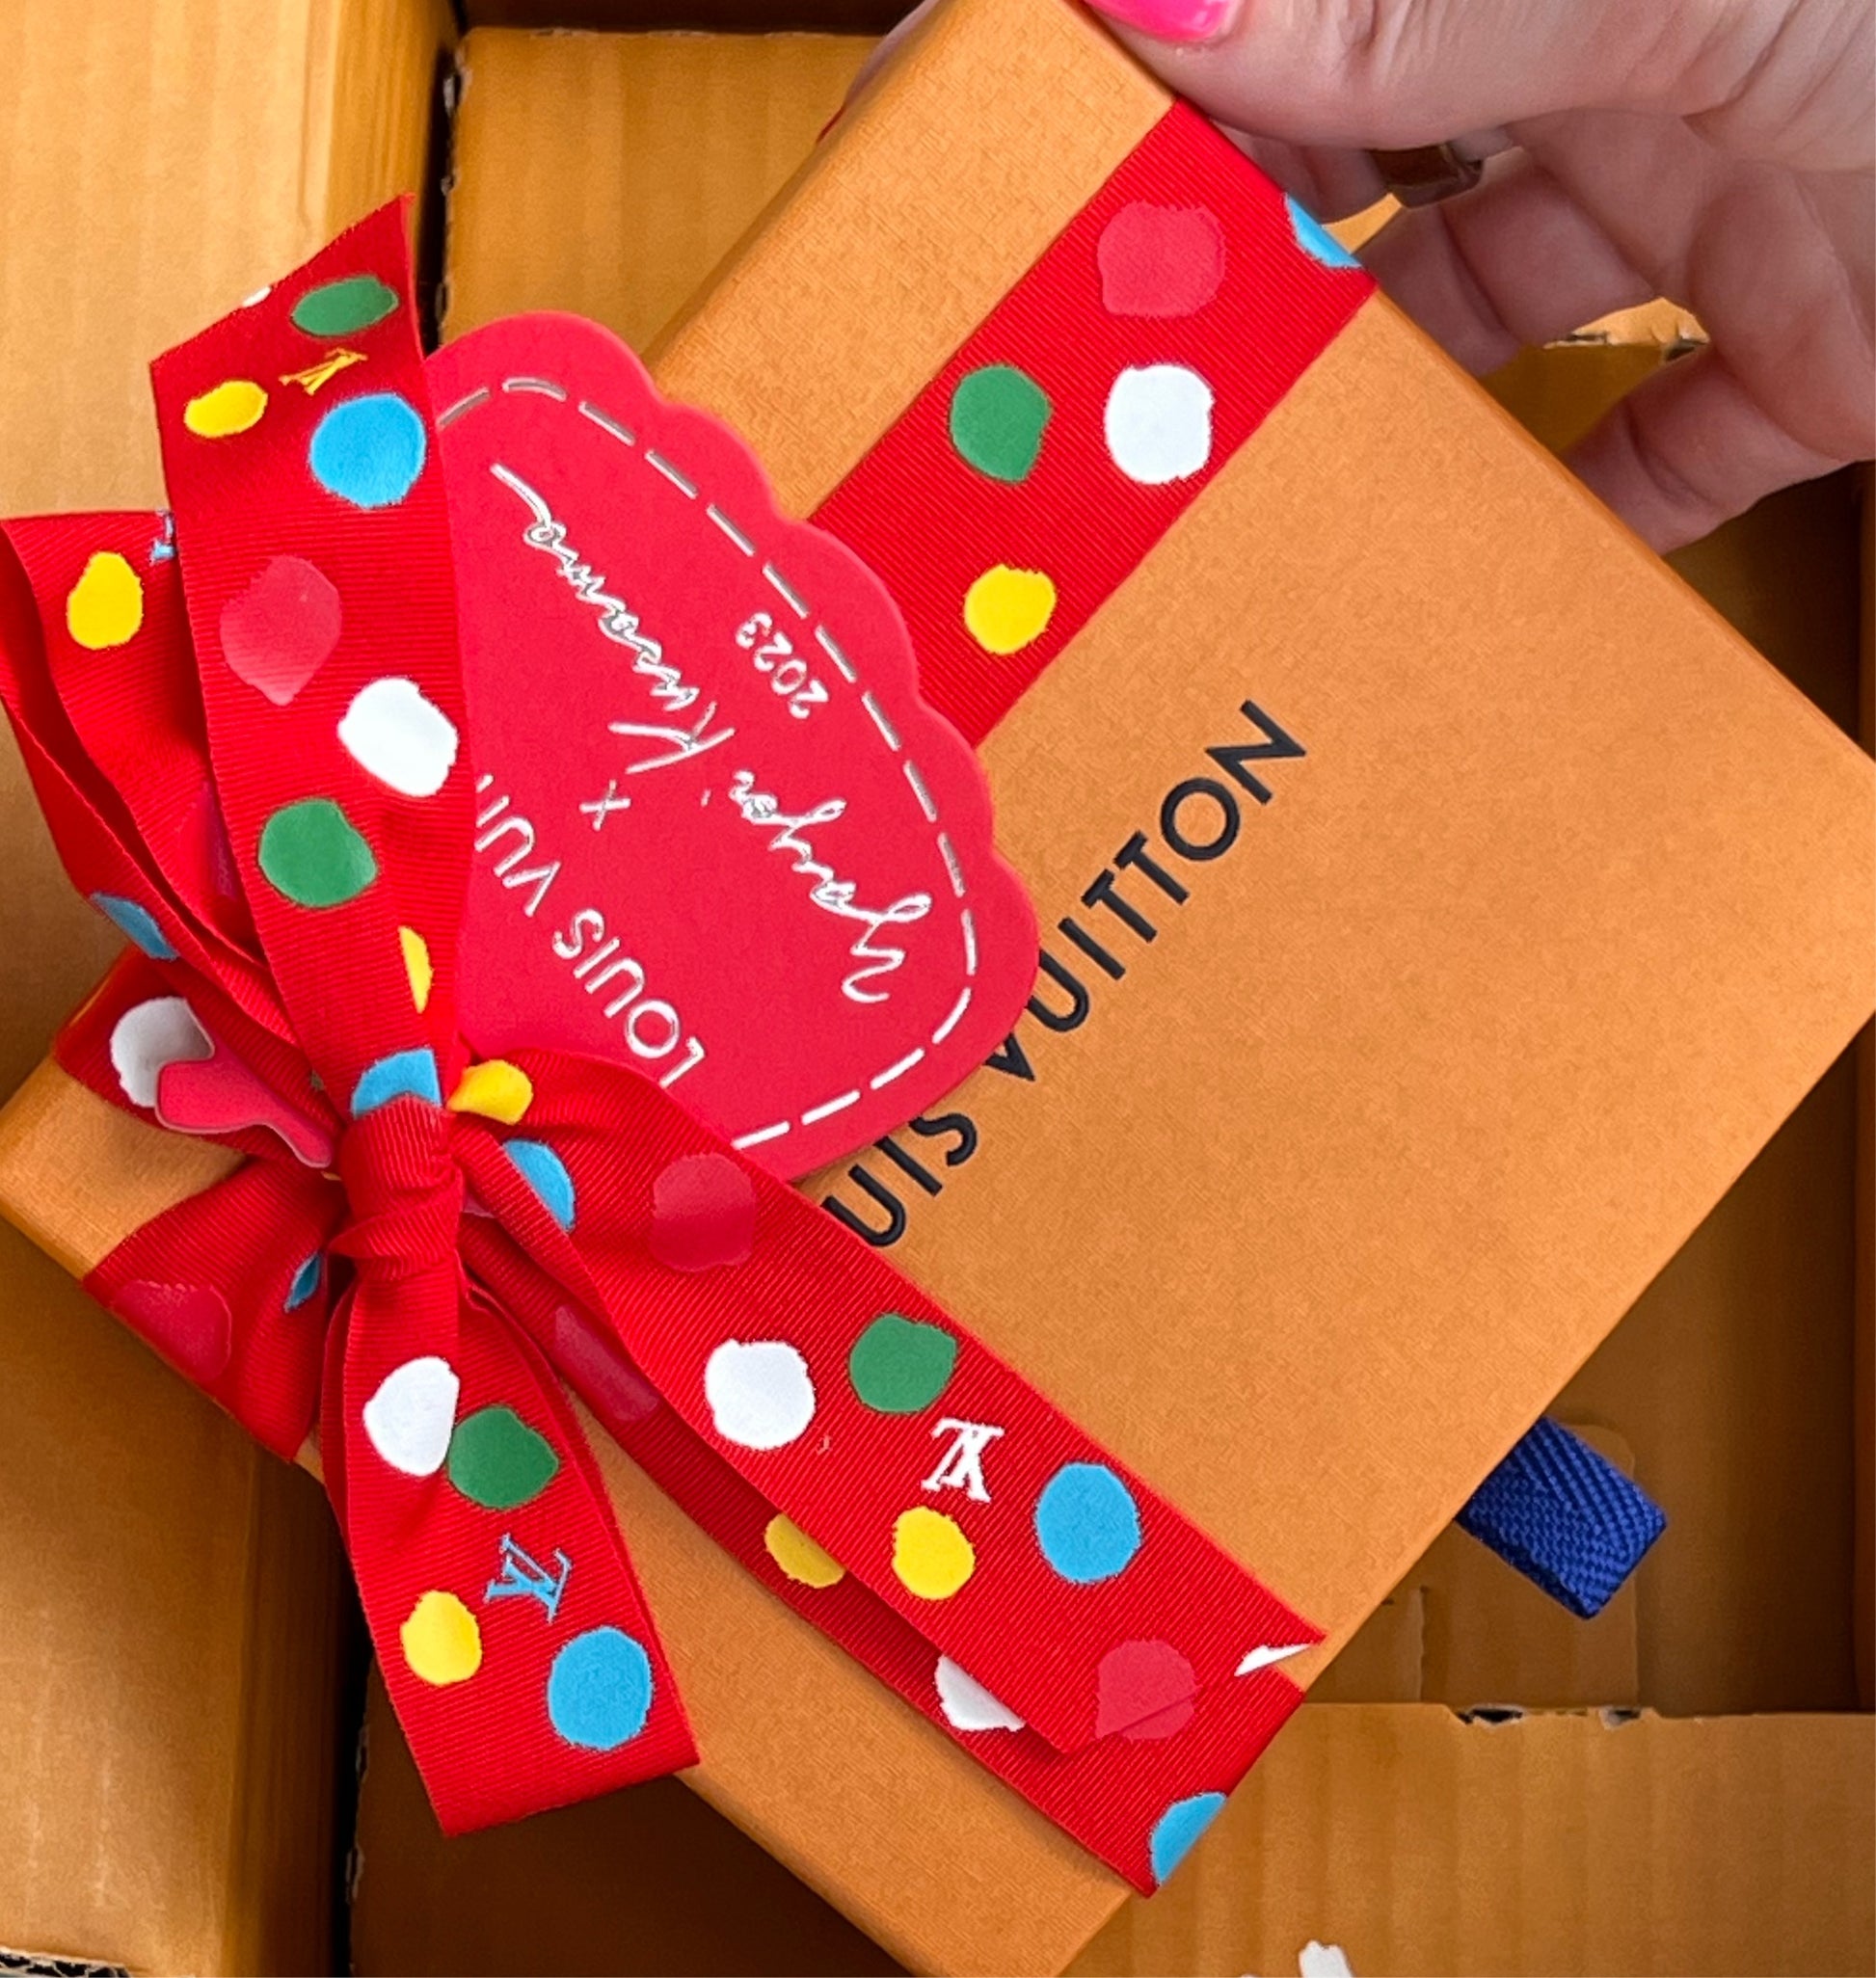 Louis Vuitton: Valentines Day Gift Ideas